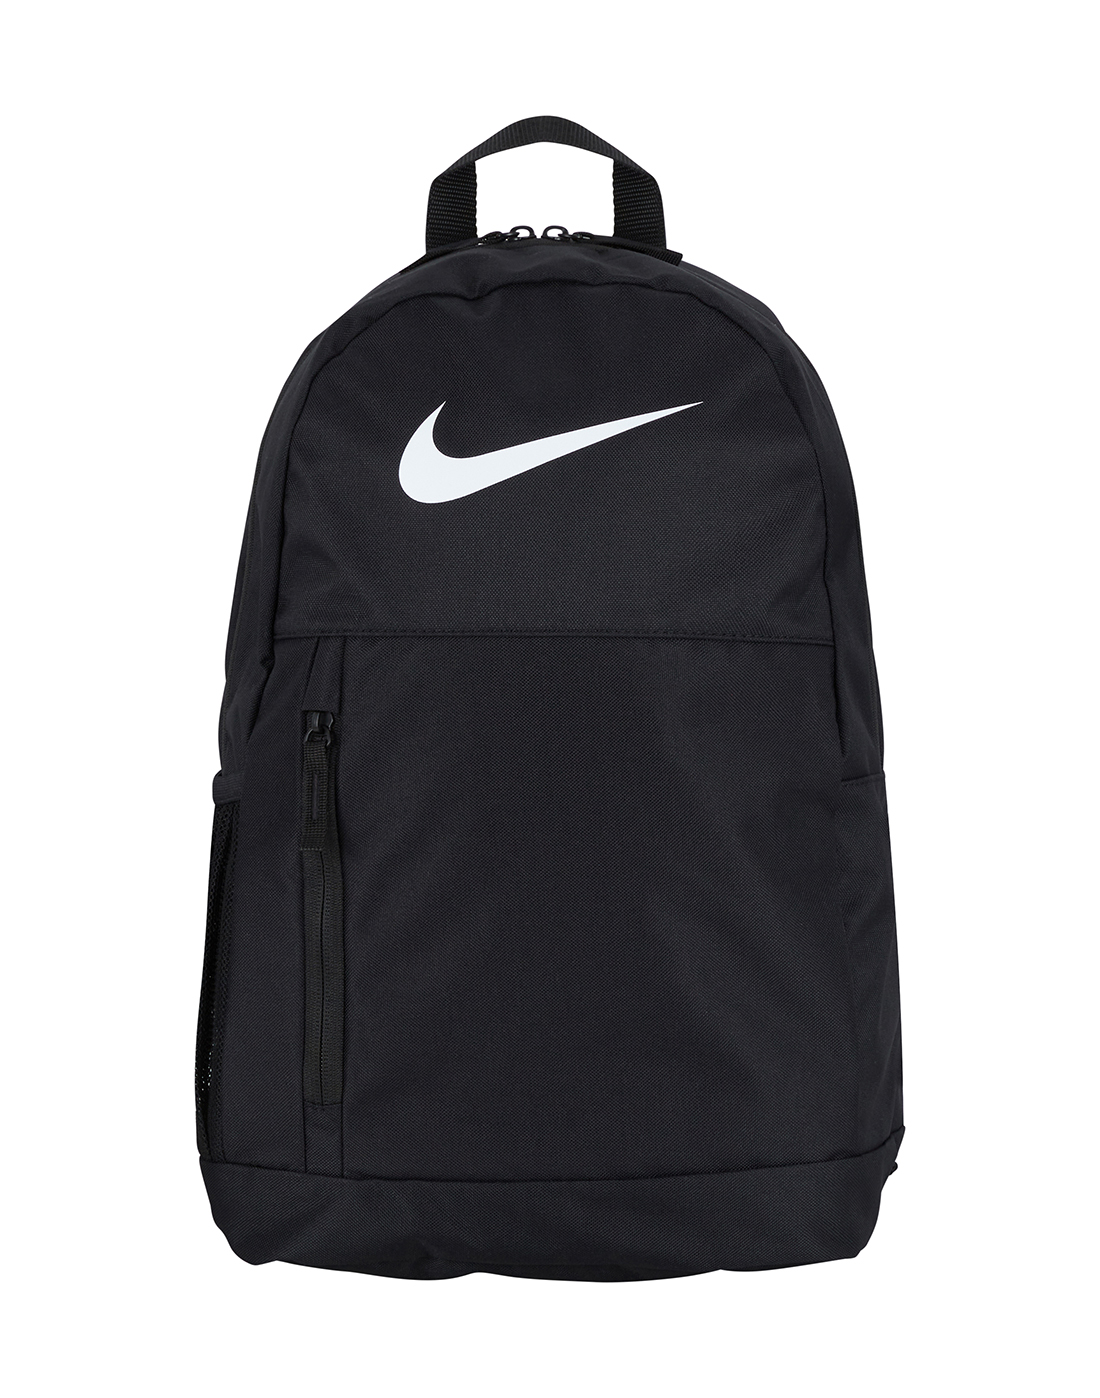 Nike Elemental Swoosh Backpack | Life Style Sports